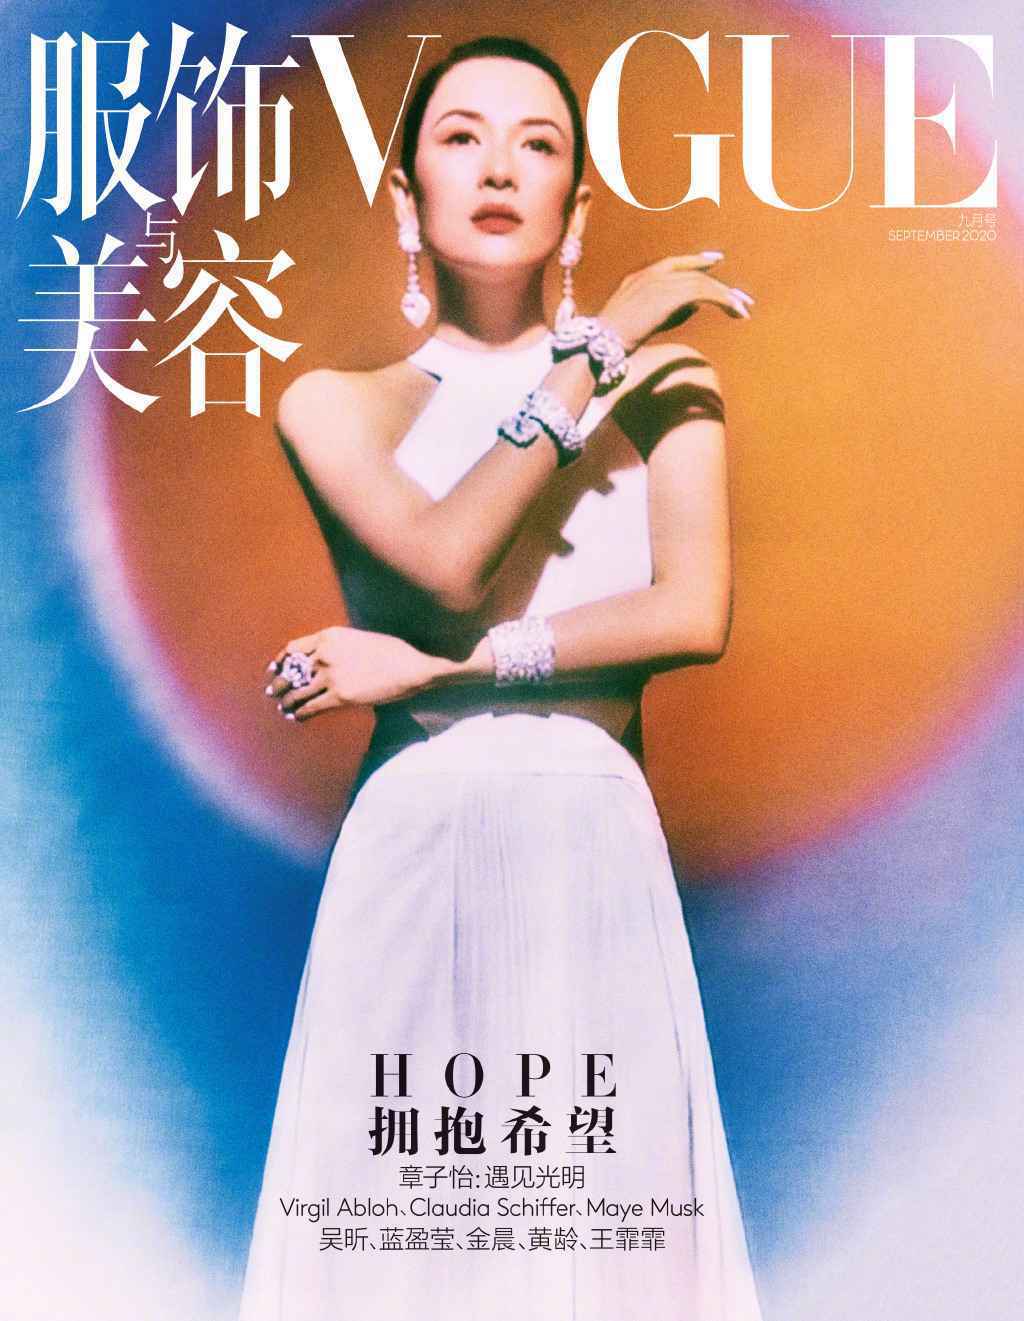 全球VOGUE九月刊携手以希望为题 中国版章子怡登封面